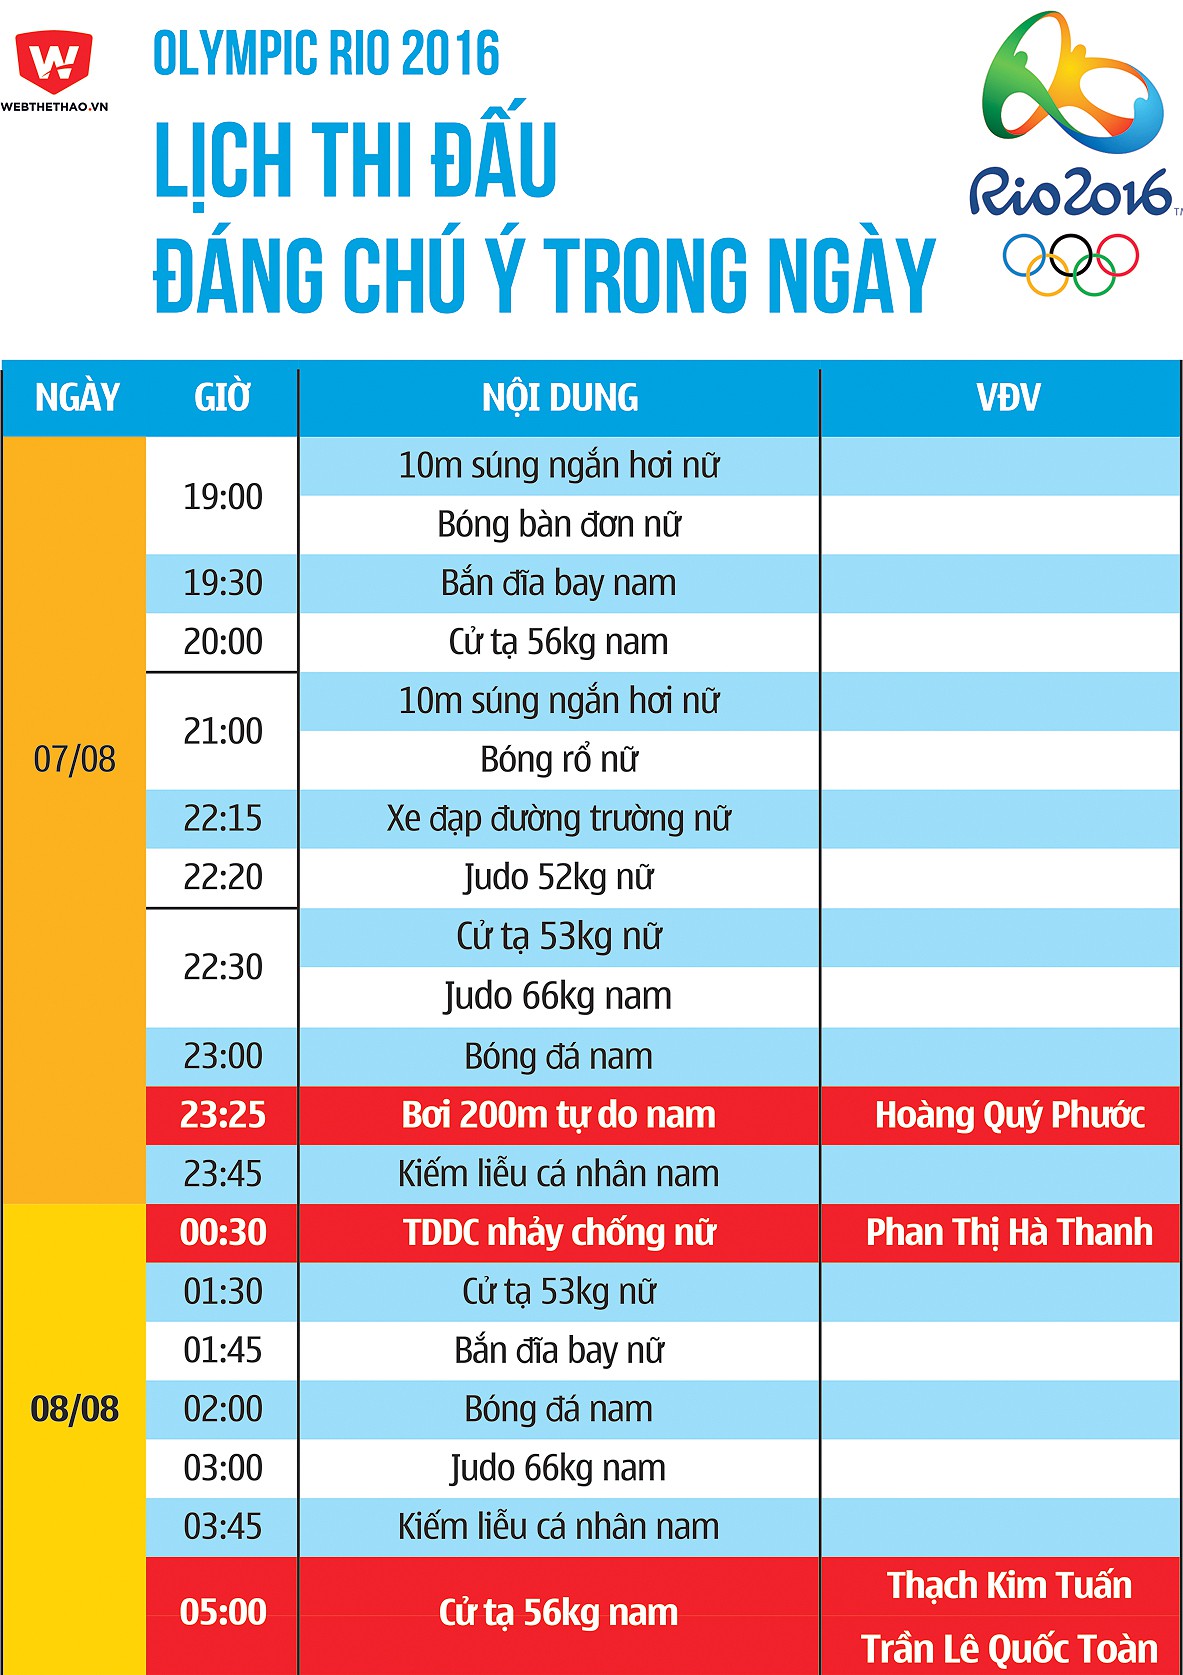 Olympic 2016: Lịch thi đấu từ ngày 07/08 đến rạng sáng ngày 08/08.